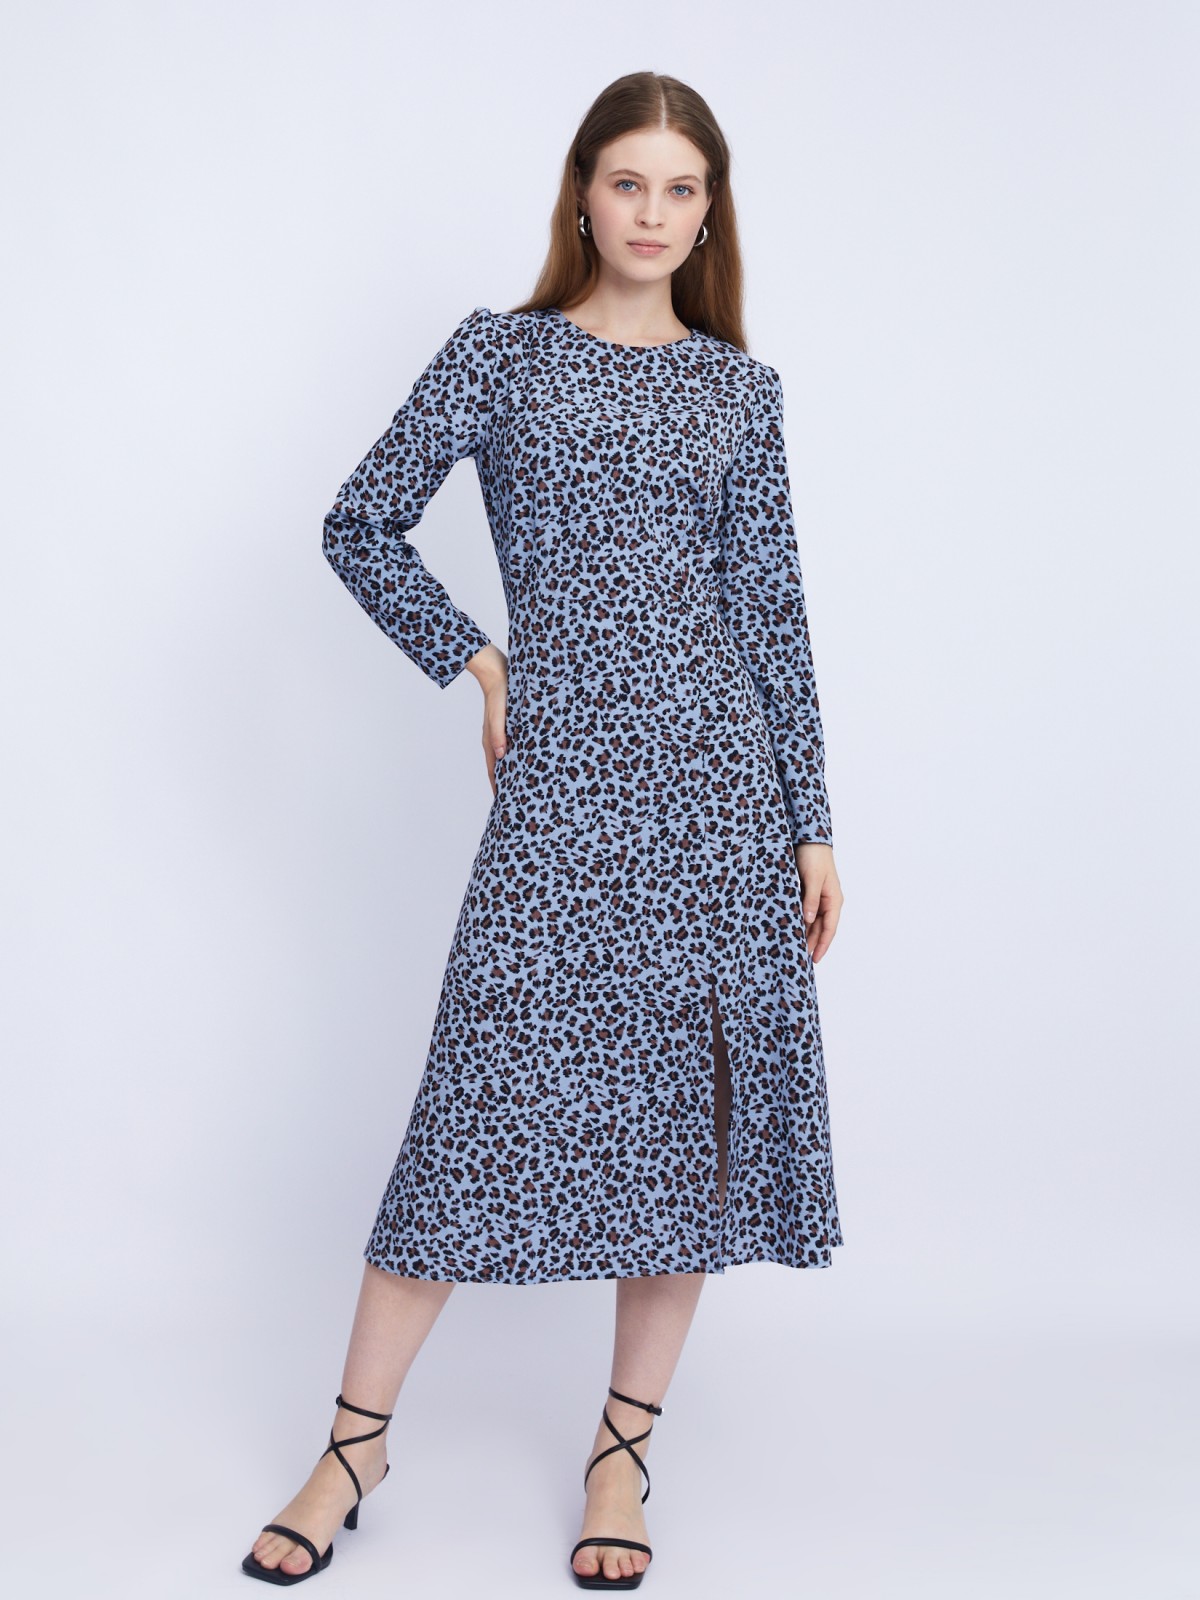 Приталенное платье длины миди с леопардовым принтом и разрезом на подоле